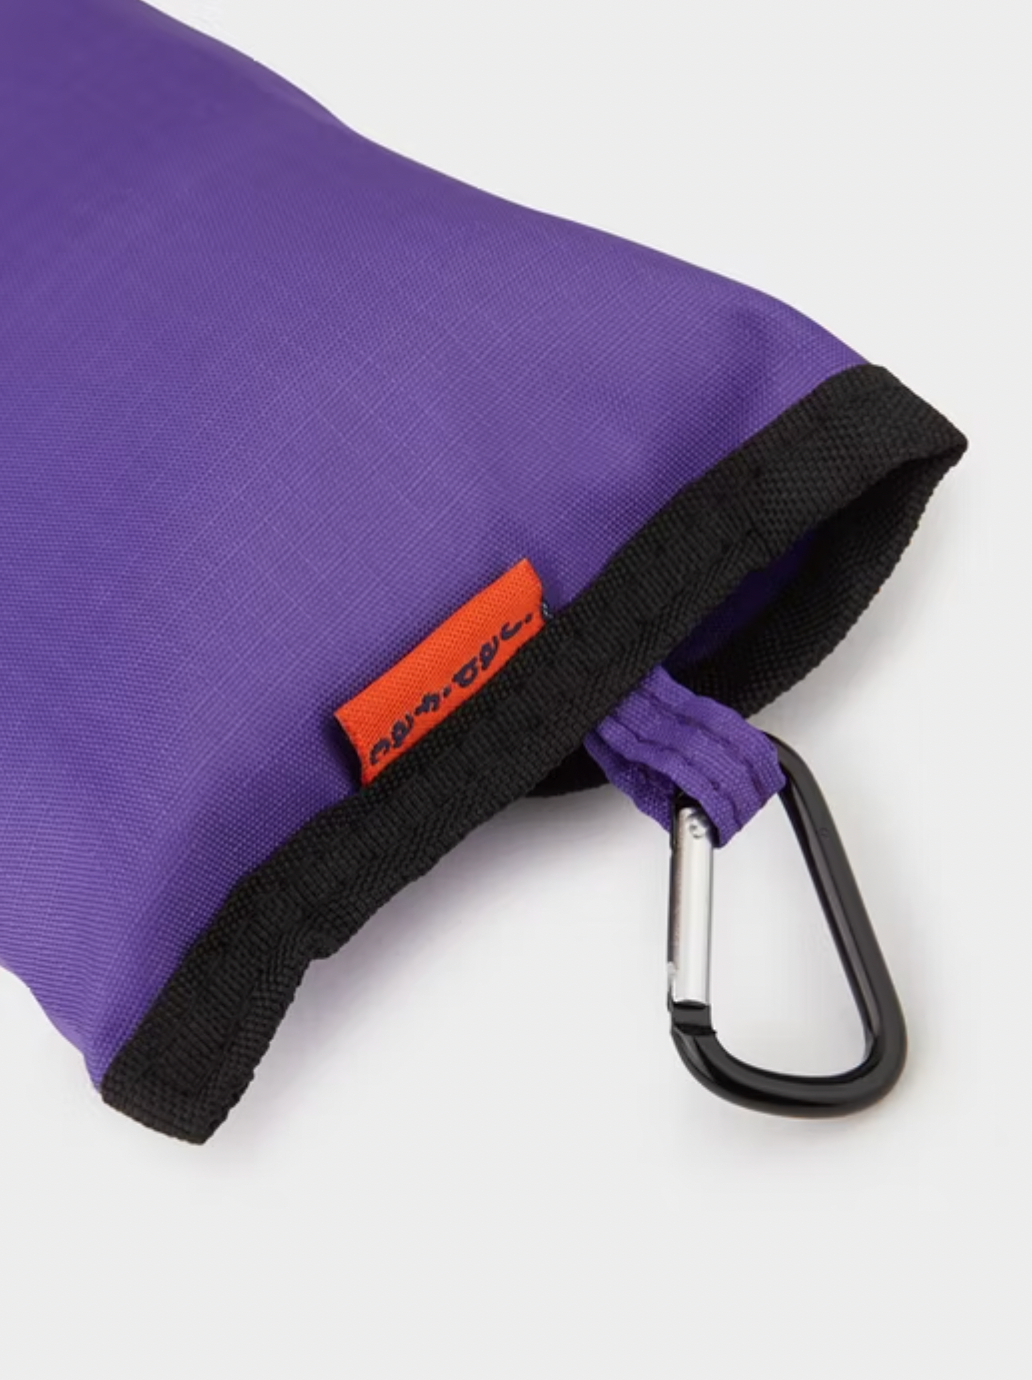 Japfac Choppy Bag (Purple)